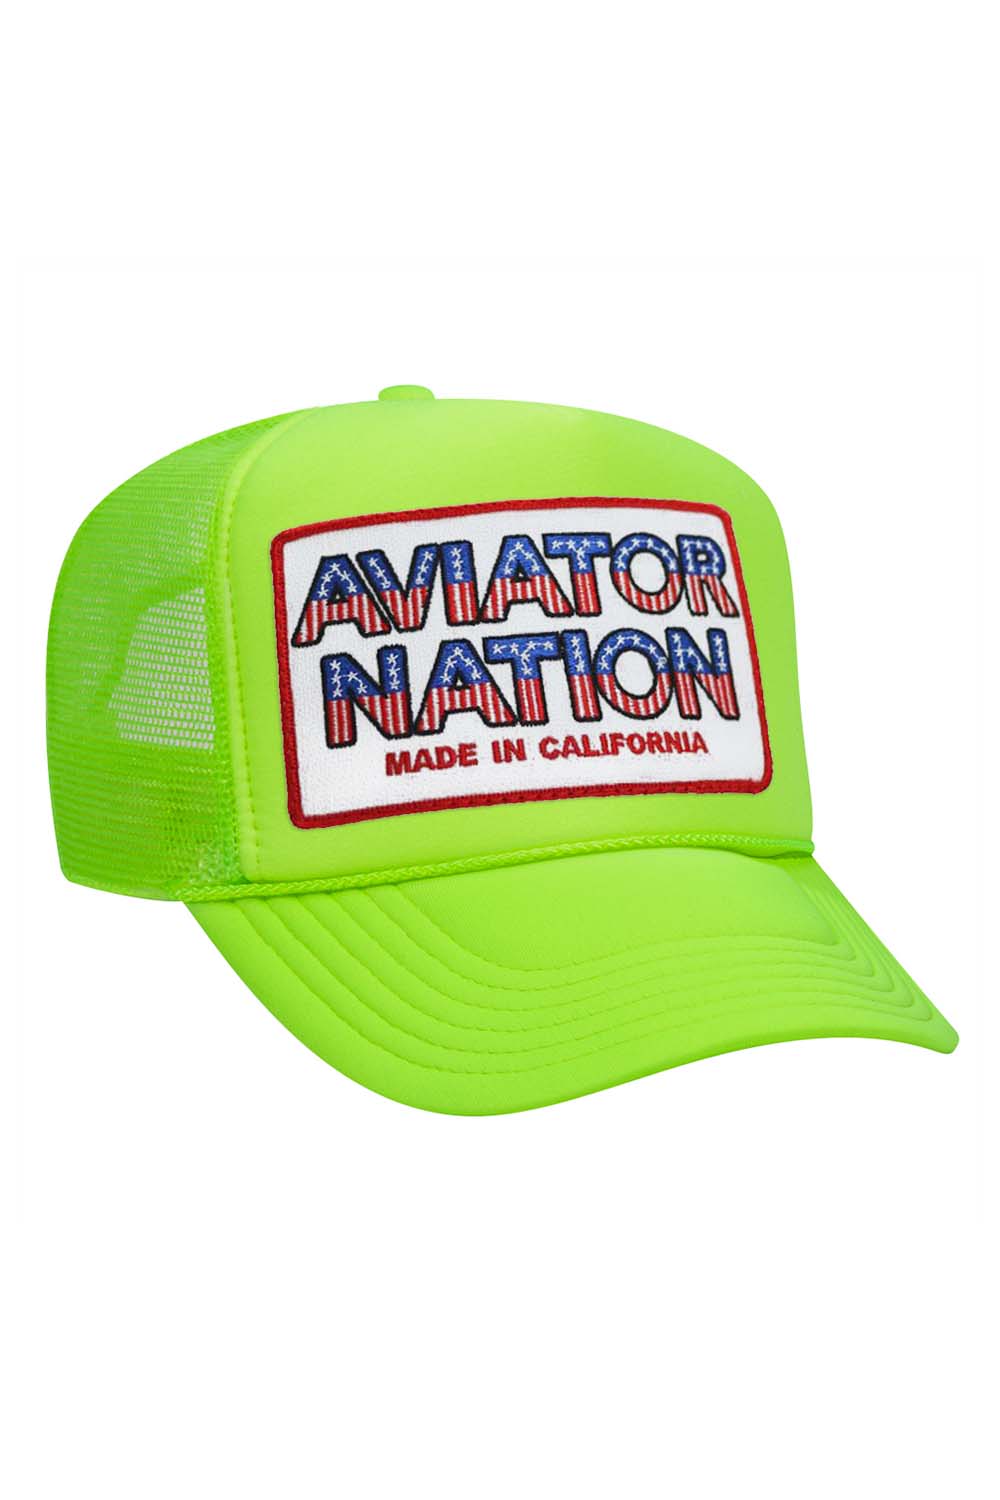 Aviator Nation Usa Patriotic Vintage Trucker Hat Aviator Nation